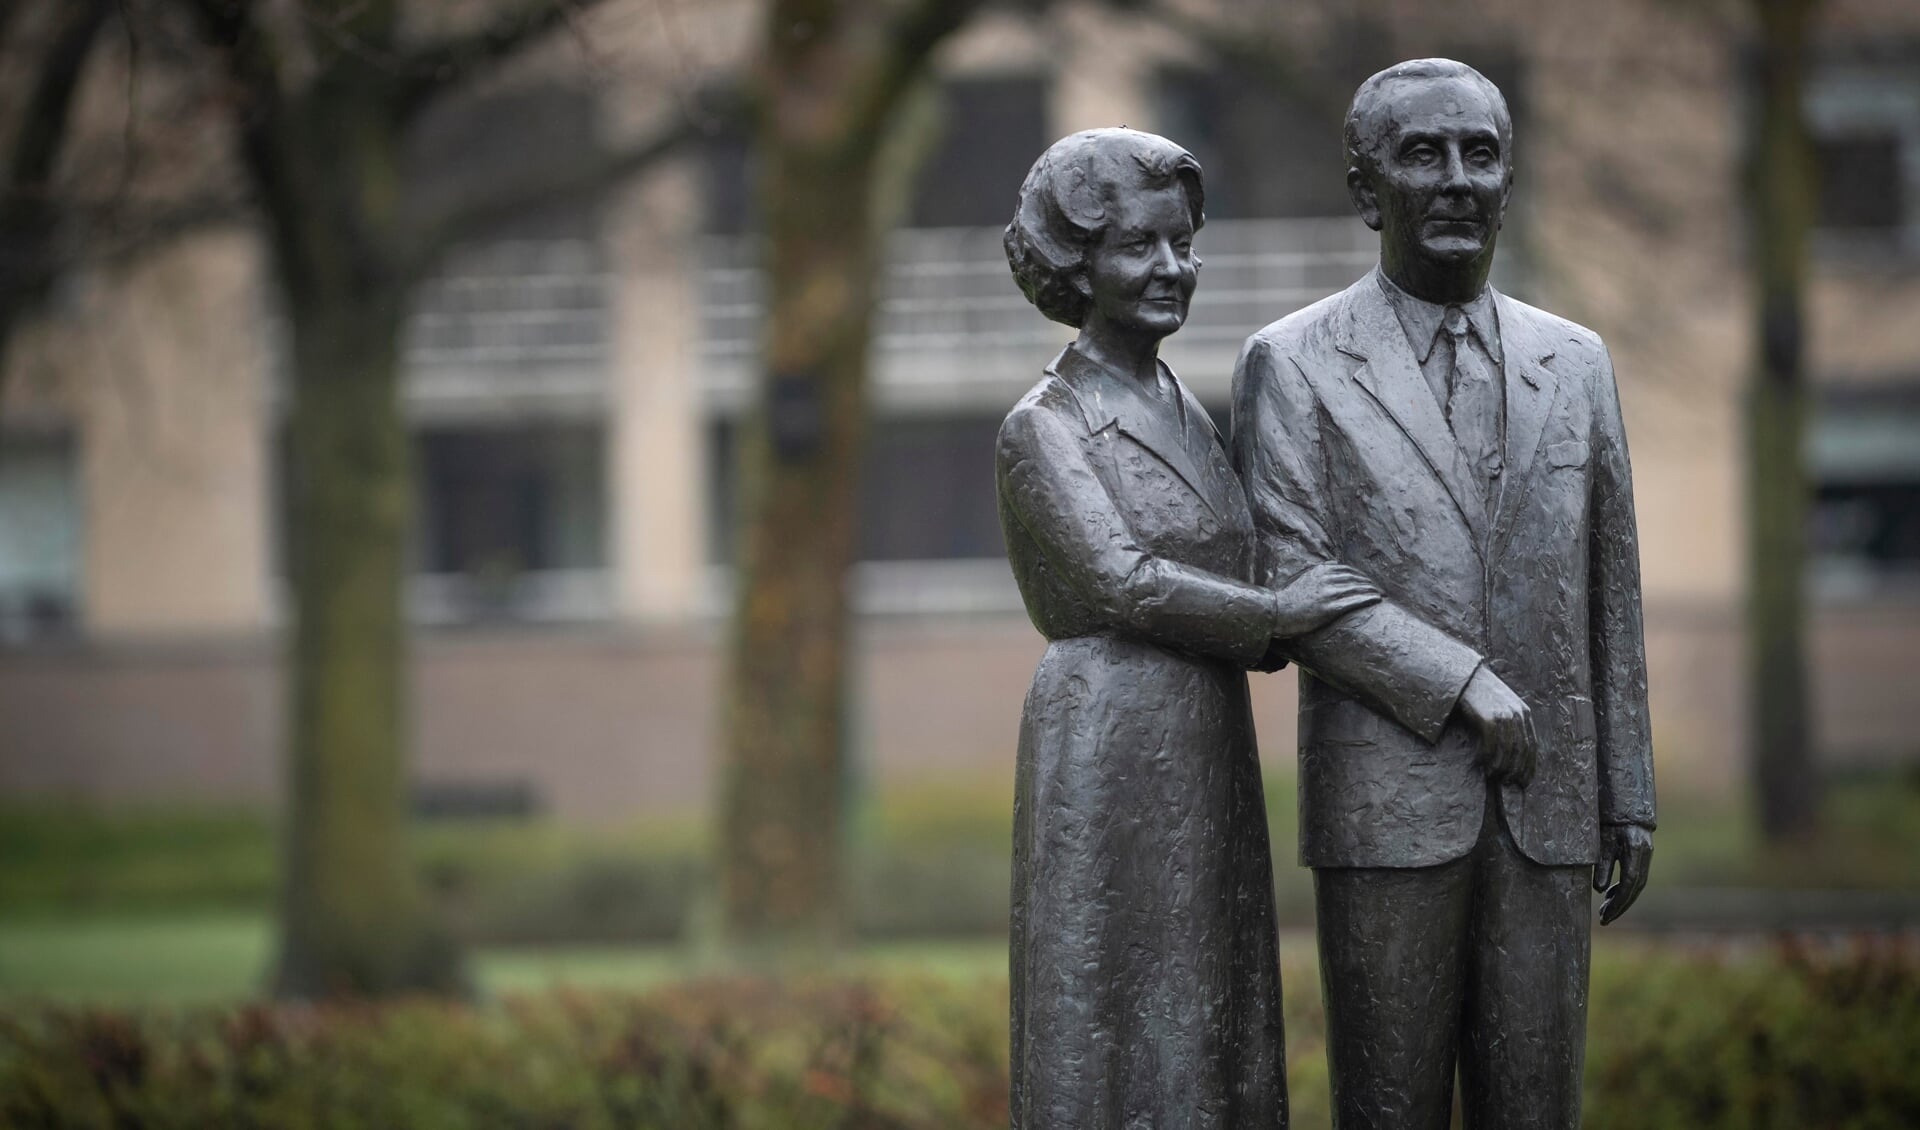 Het standbeeld van Hub van Doorne en zijn vrouw was een van de projecten van de Vriendenkring. (Foto: Hein van Bakel)